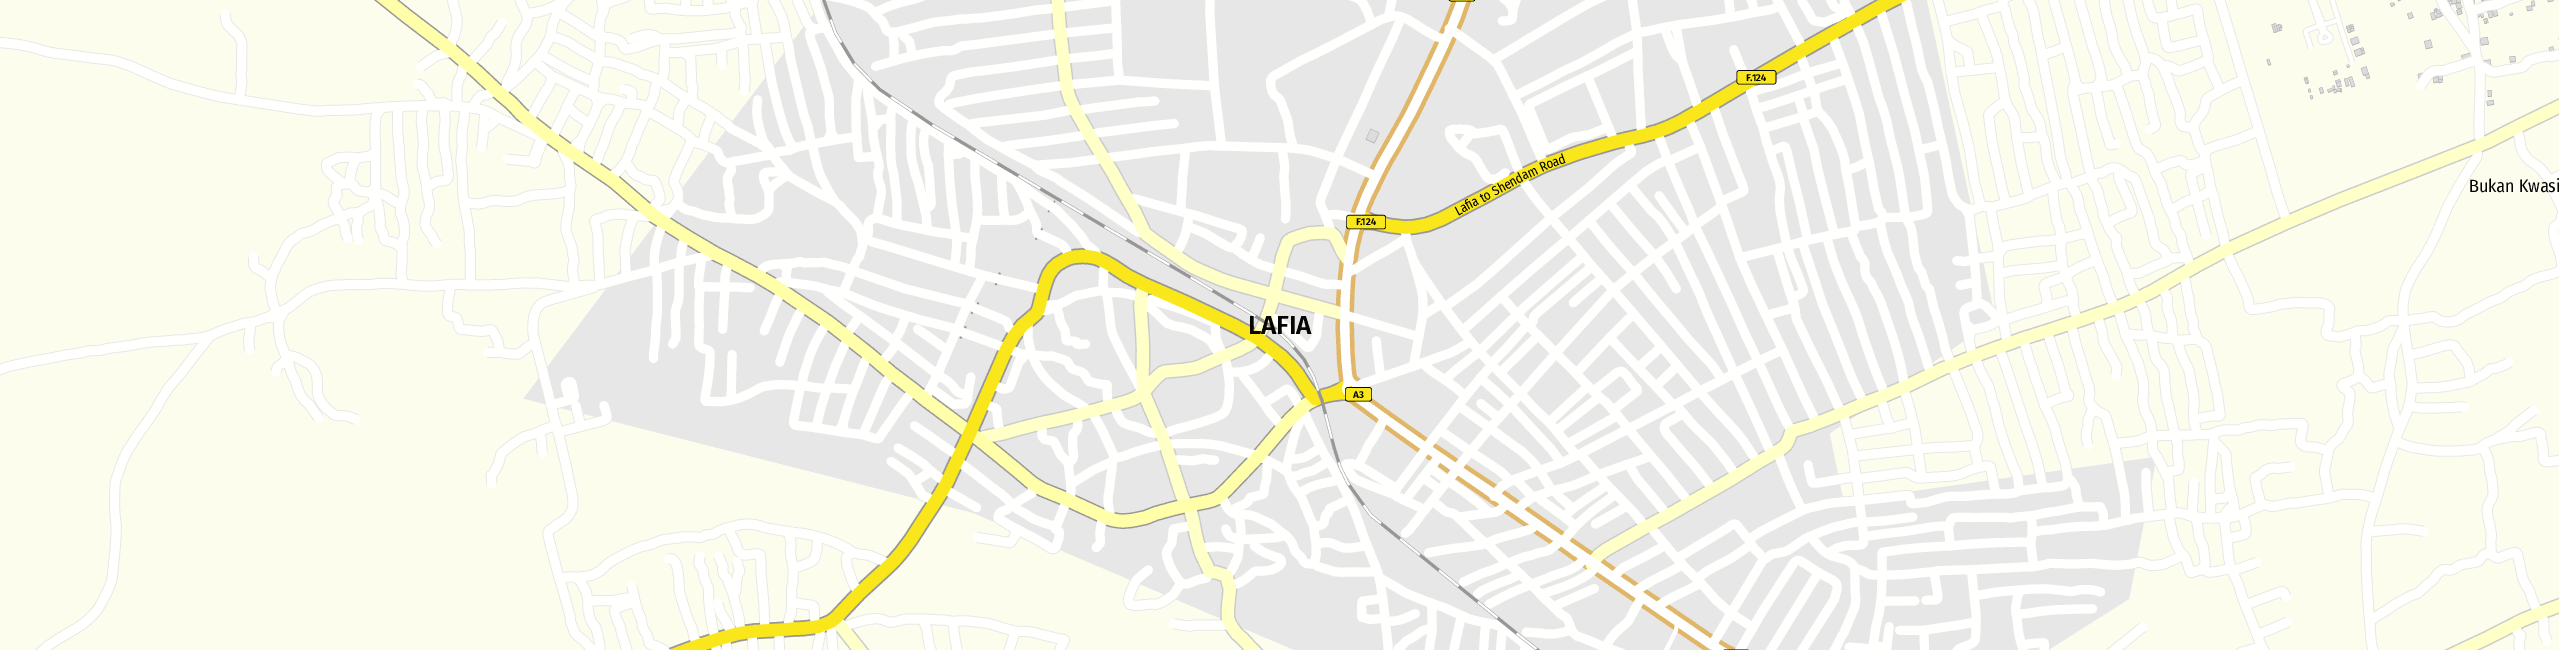 Stadtplan Lafia zum Downloaden.